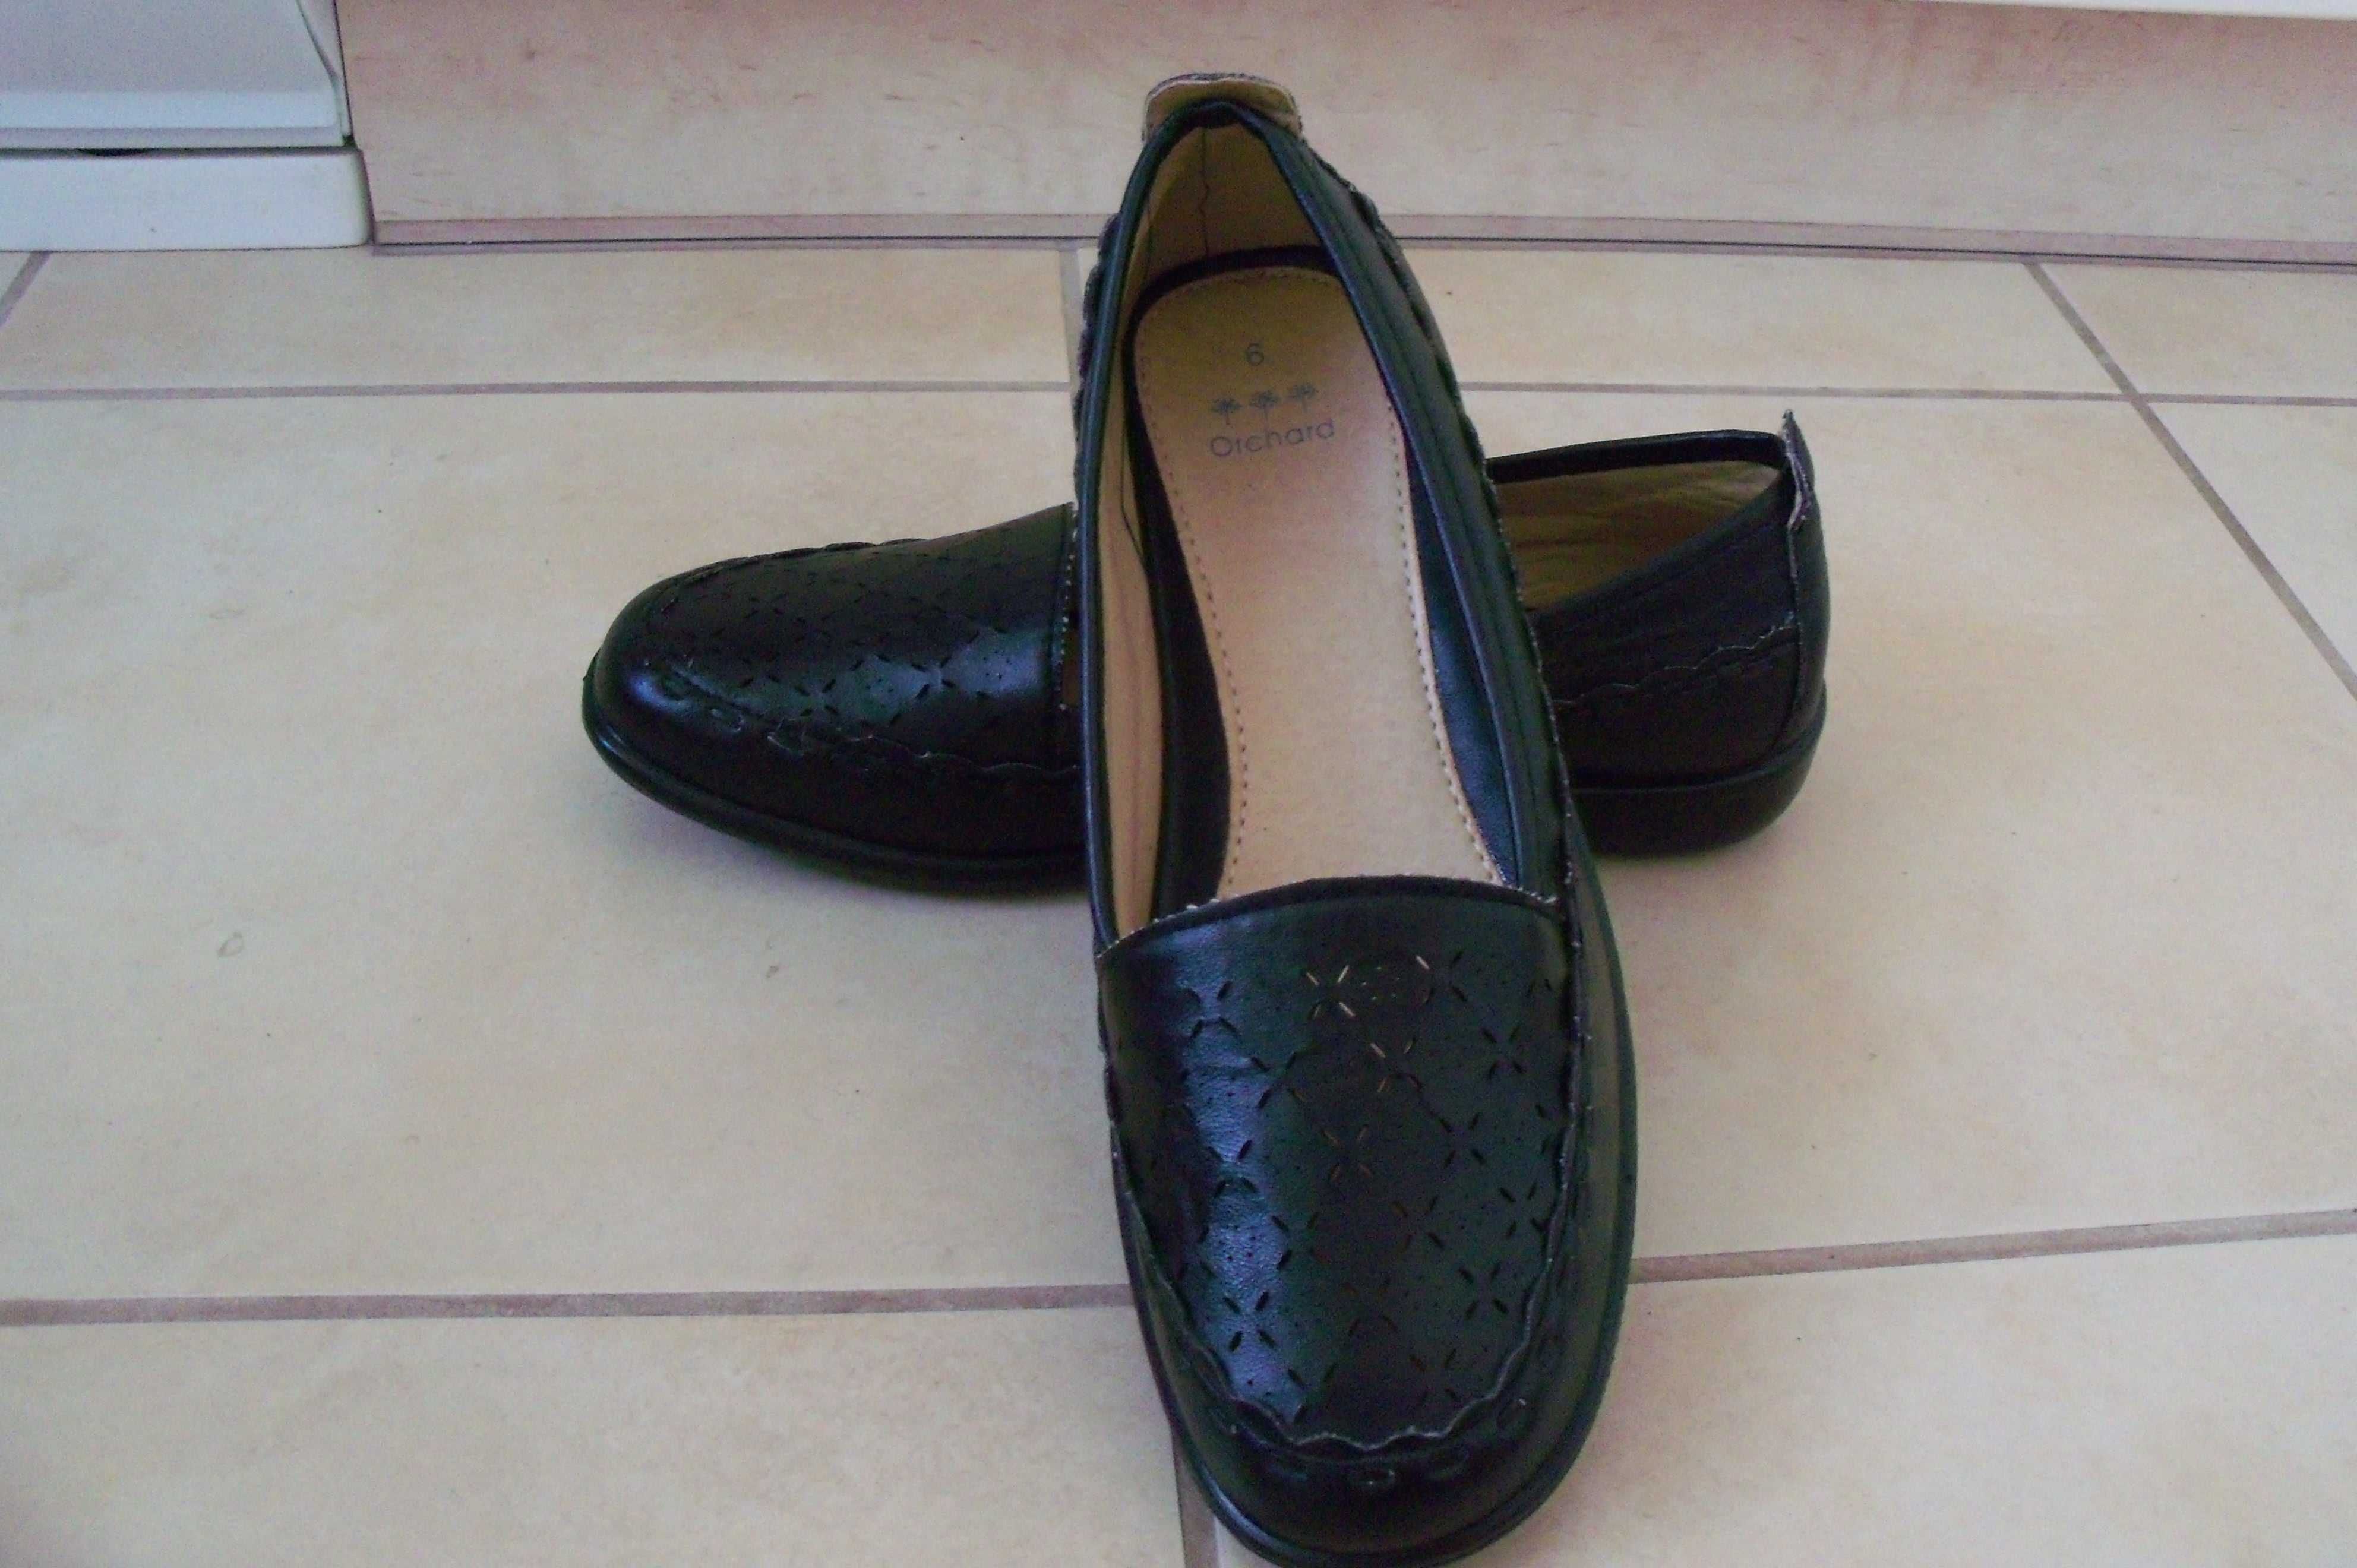 NOWE eleganckie półbuty pantofle damskie ORCHARD rozm.39 dł.wew.25 cm